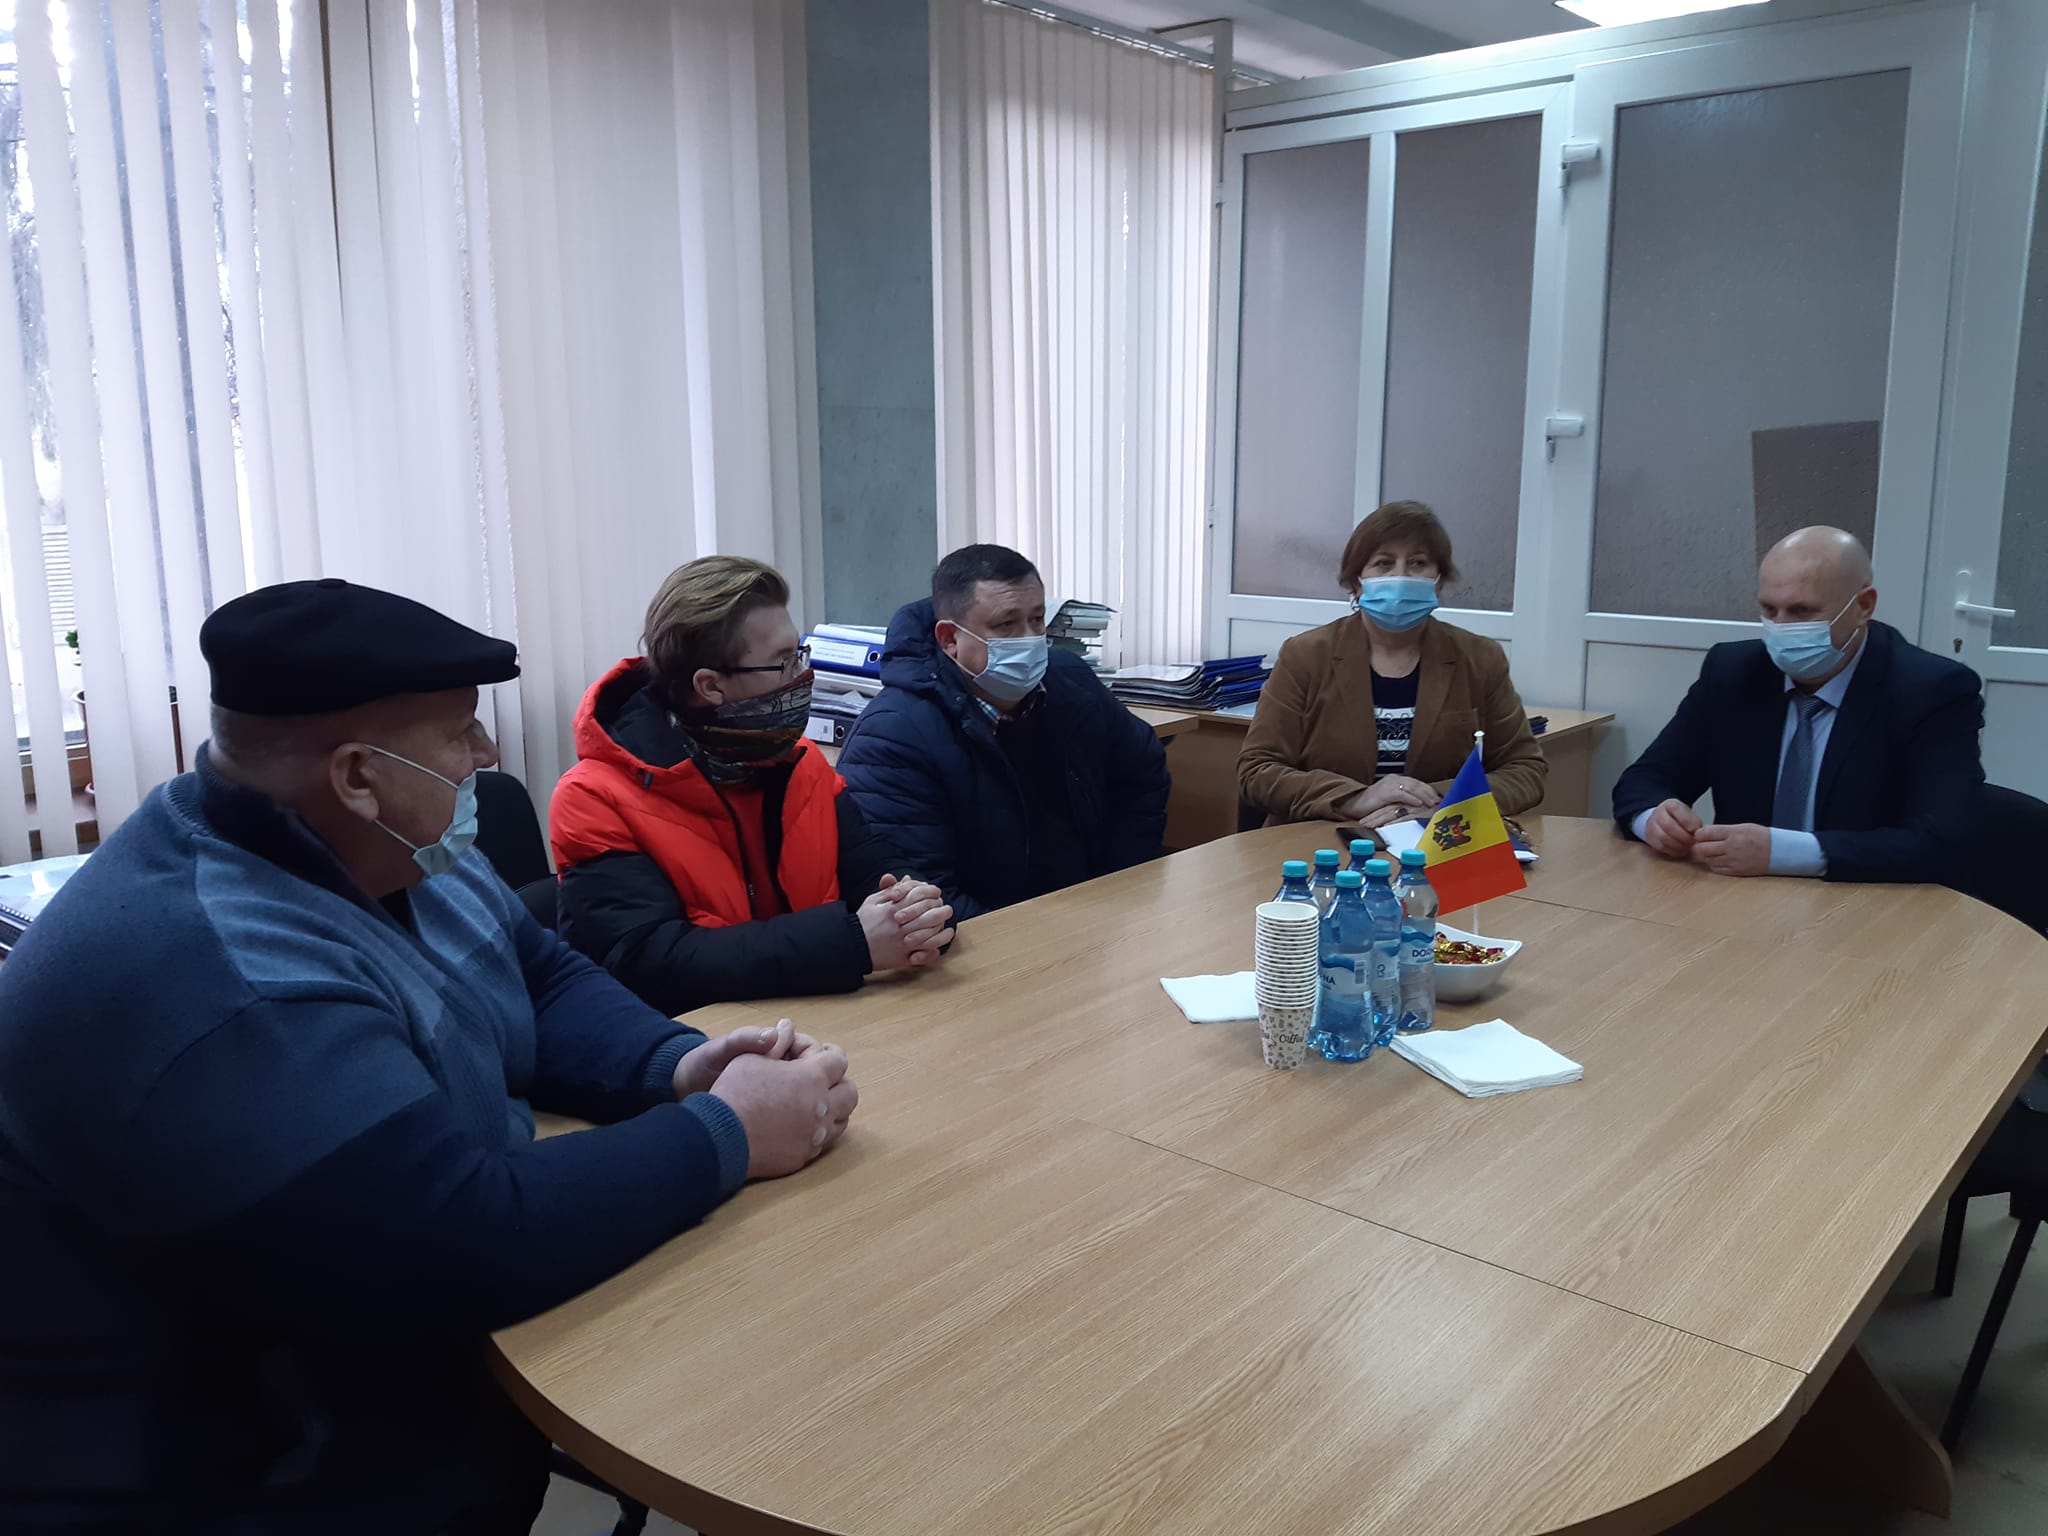 Președintele raionului, dnul Vasile MĂRCUȚĂ, a avut o întrevedere cu reprezentații Asociației Obștești Societatea Invalizilor din Republica Moldova.